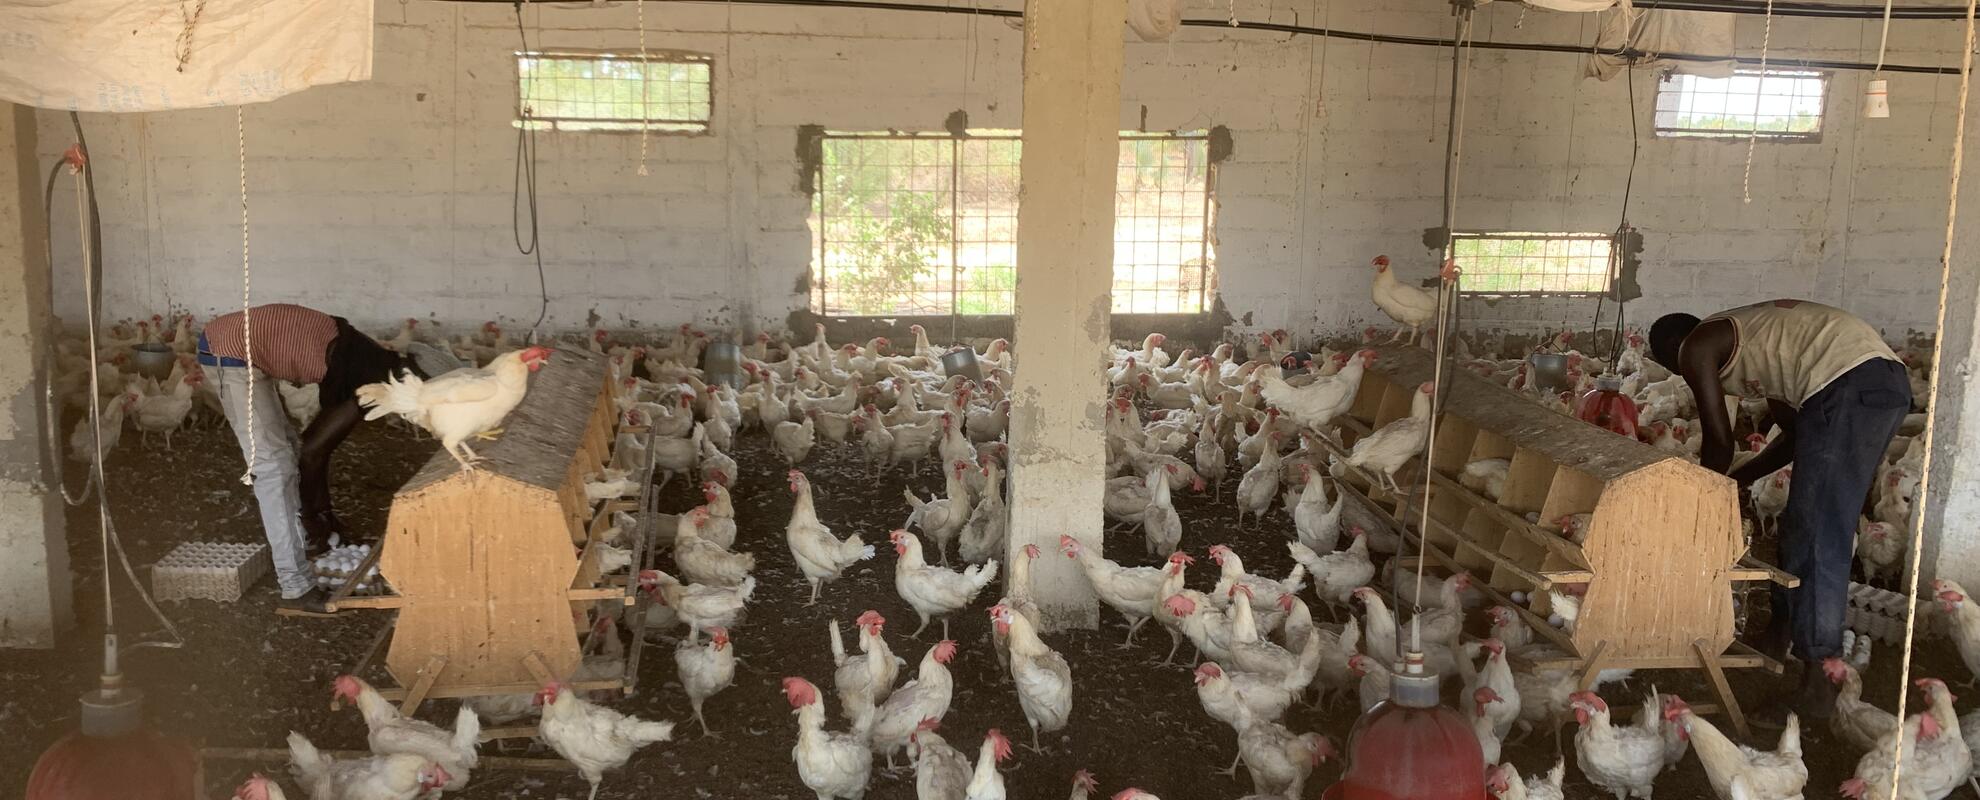 Poultry farming in Senegal